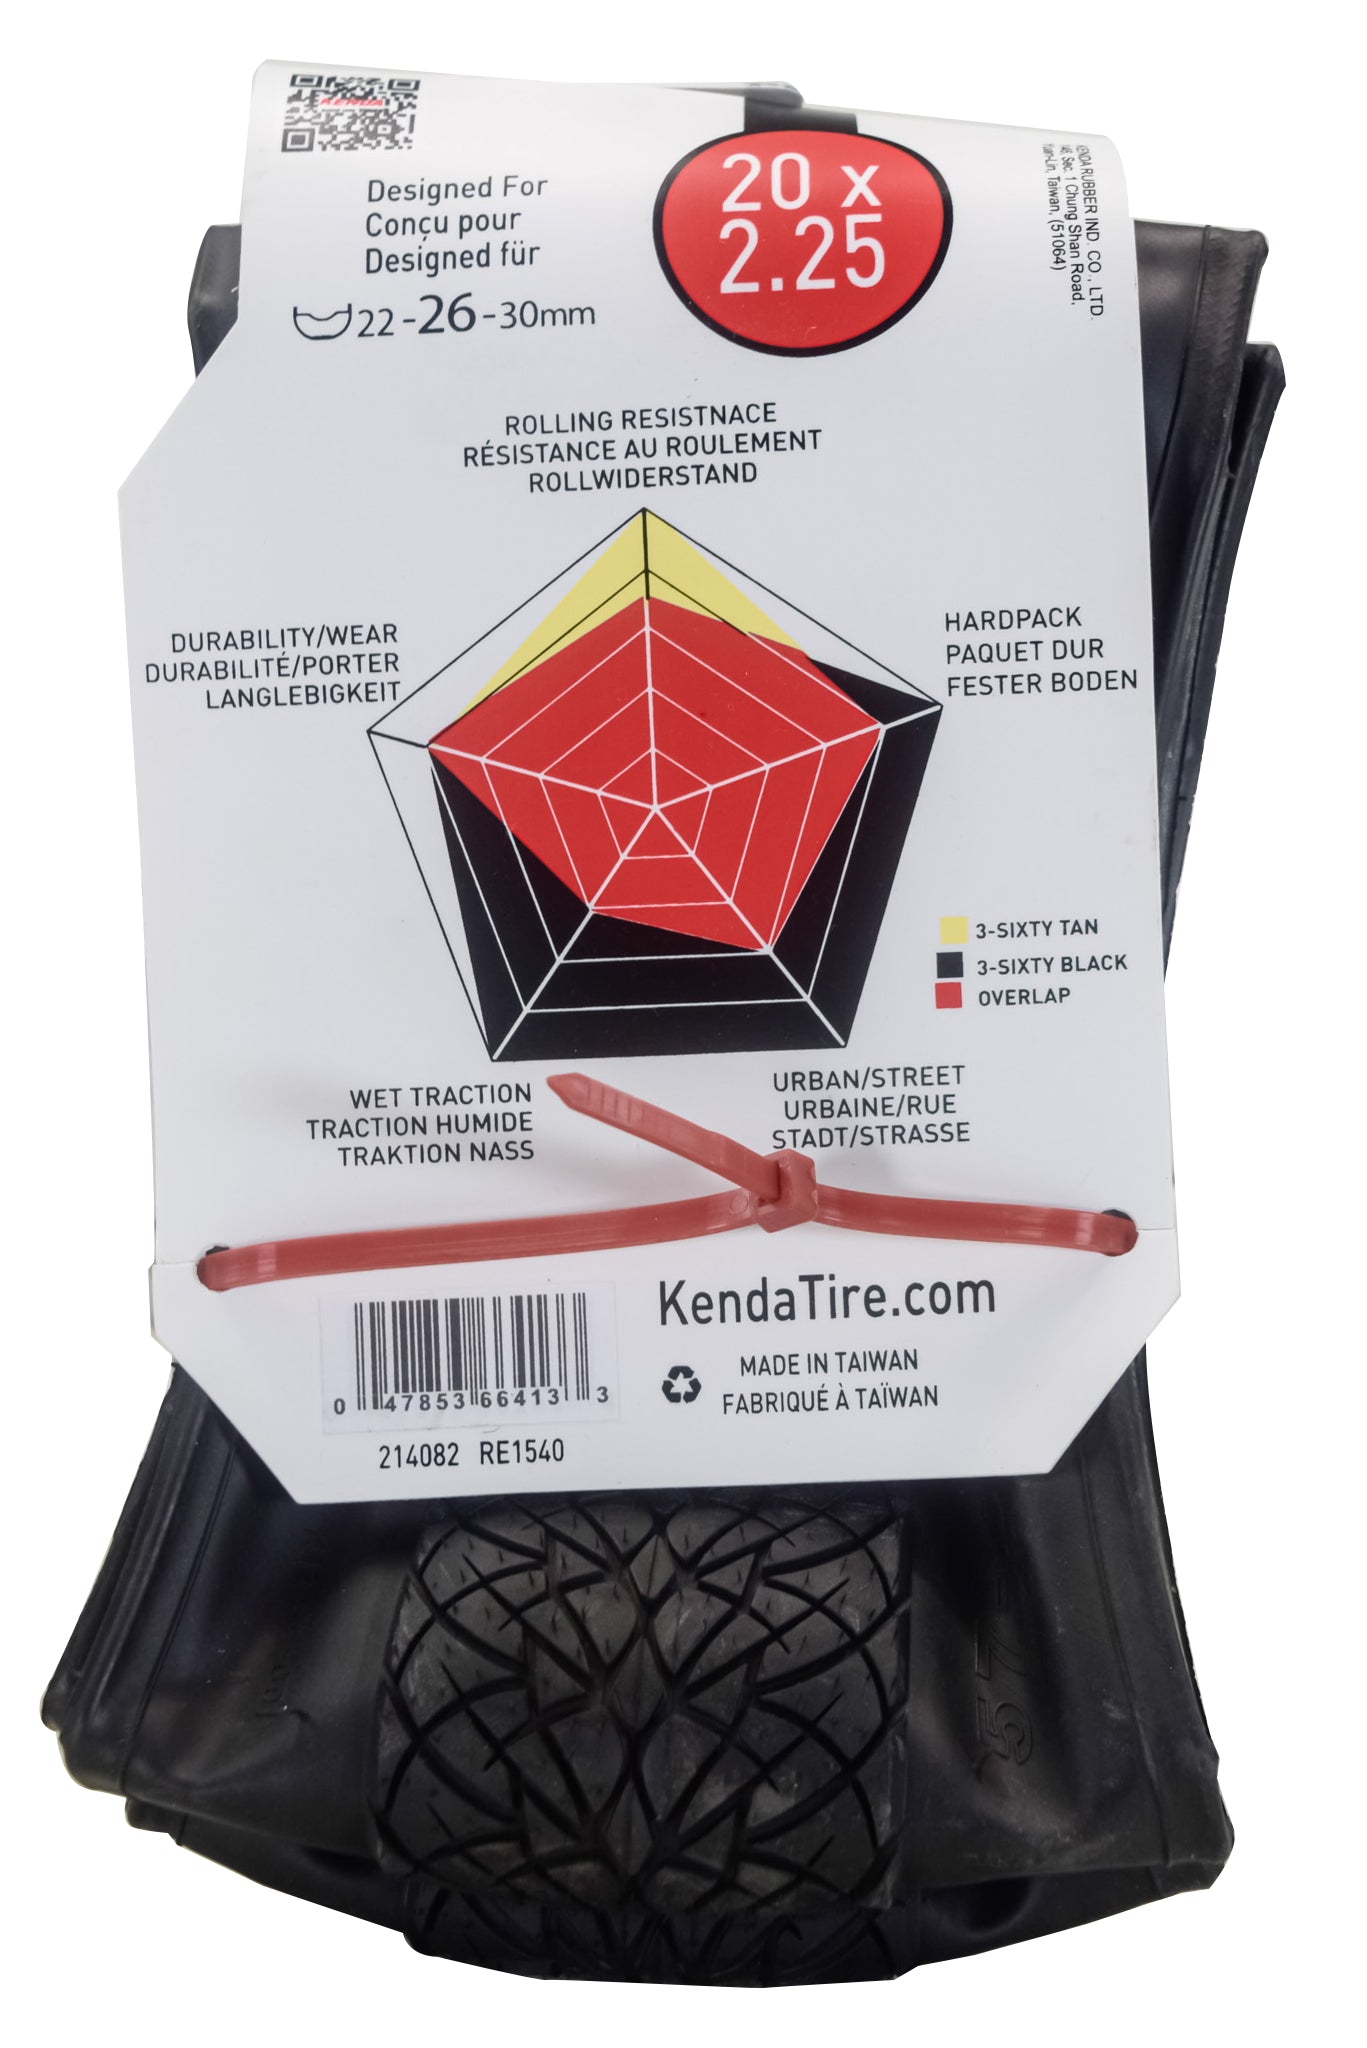 Kenda 3-Sixty Pro TR 120tpi Black 20x2.25, 20x2.00-2.40 Tube & Keychain (Single)